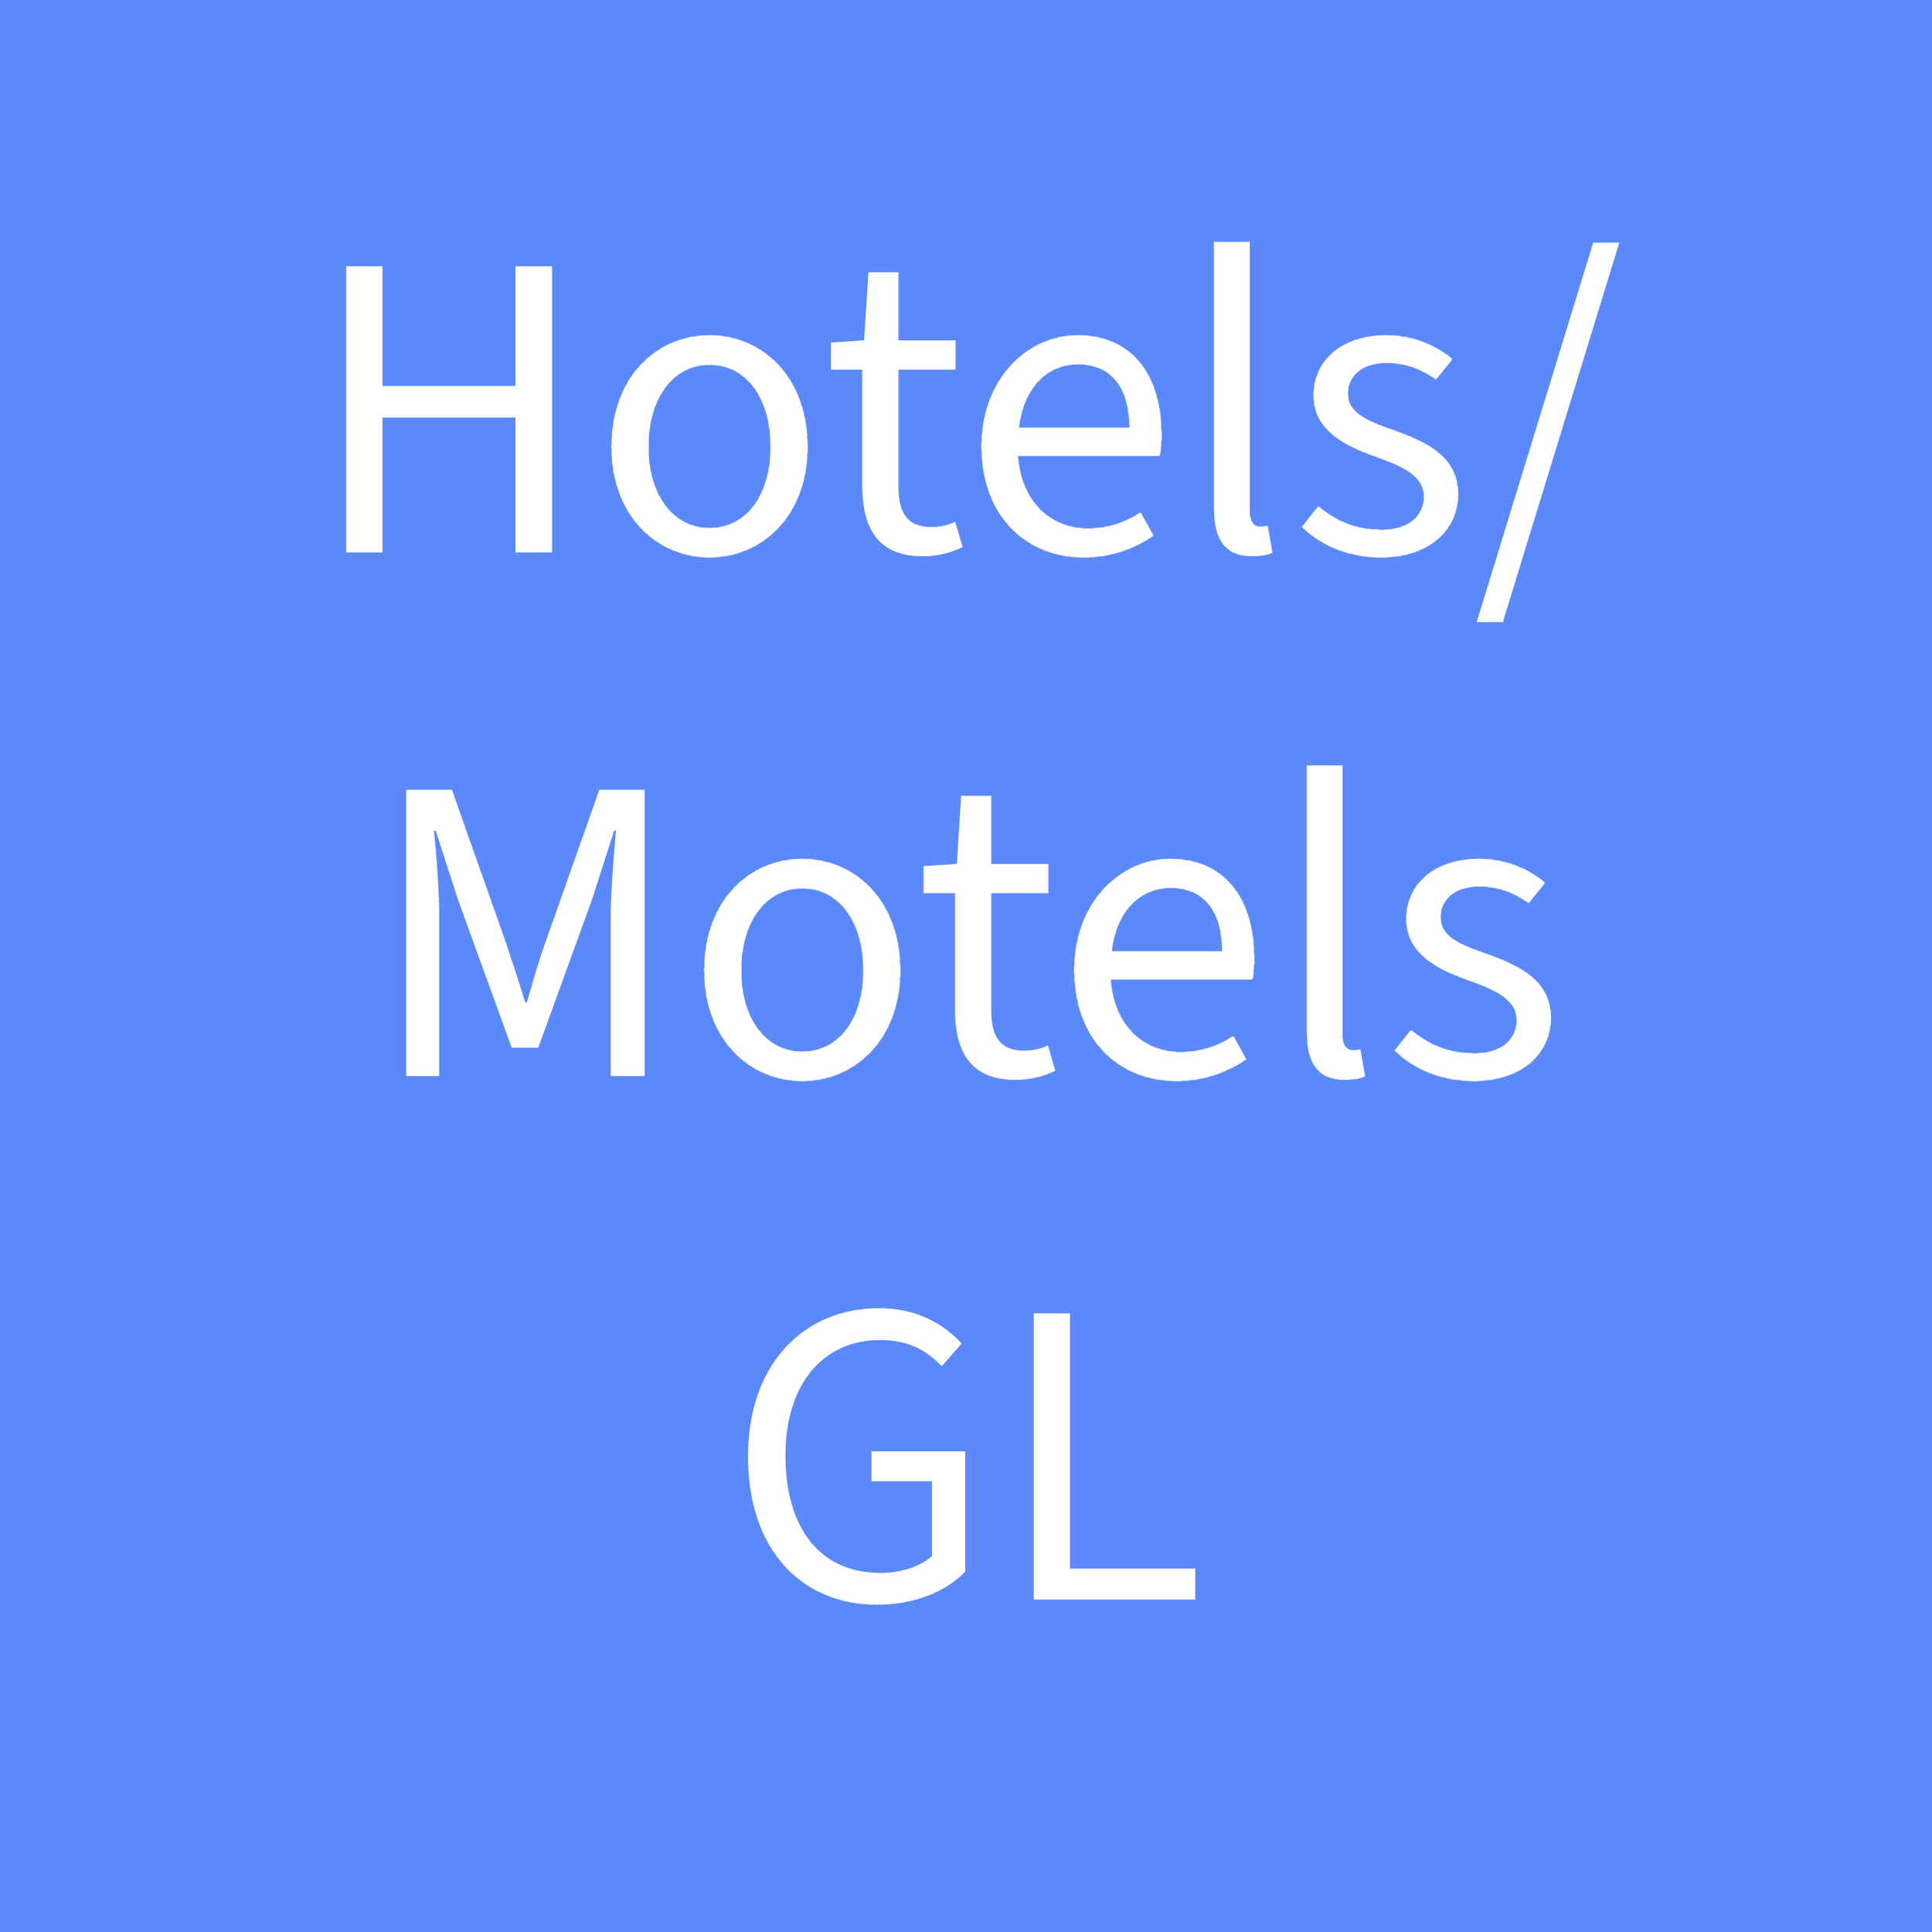 Hotels/ Motels 